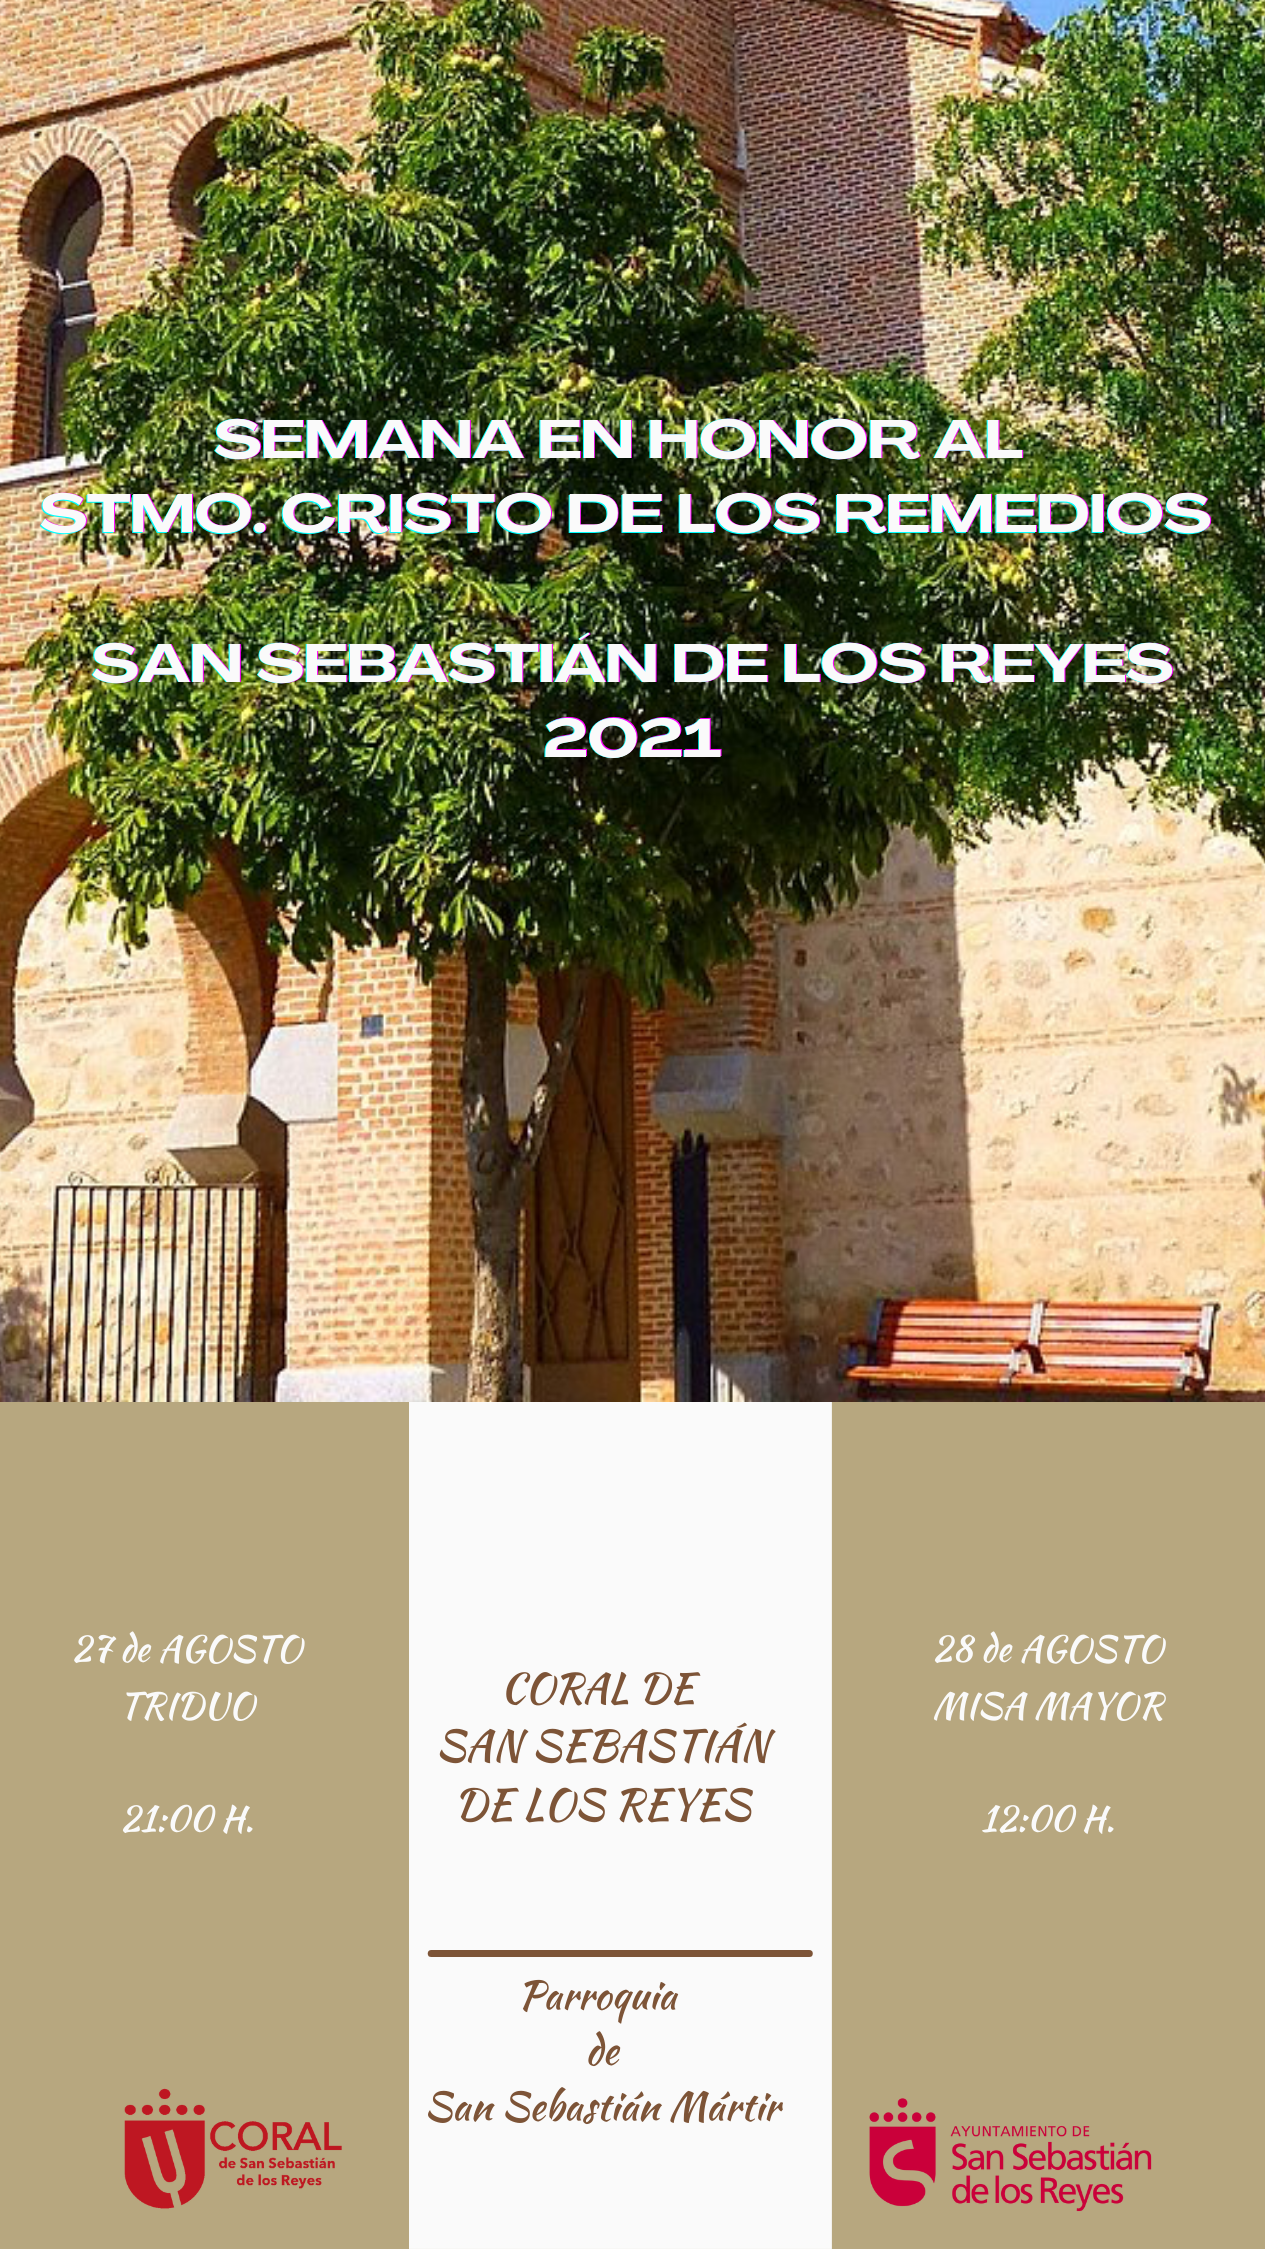 Semana en honor al Stmo. Cristo de los Remedios. San Sebastián de los Reyes 2021